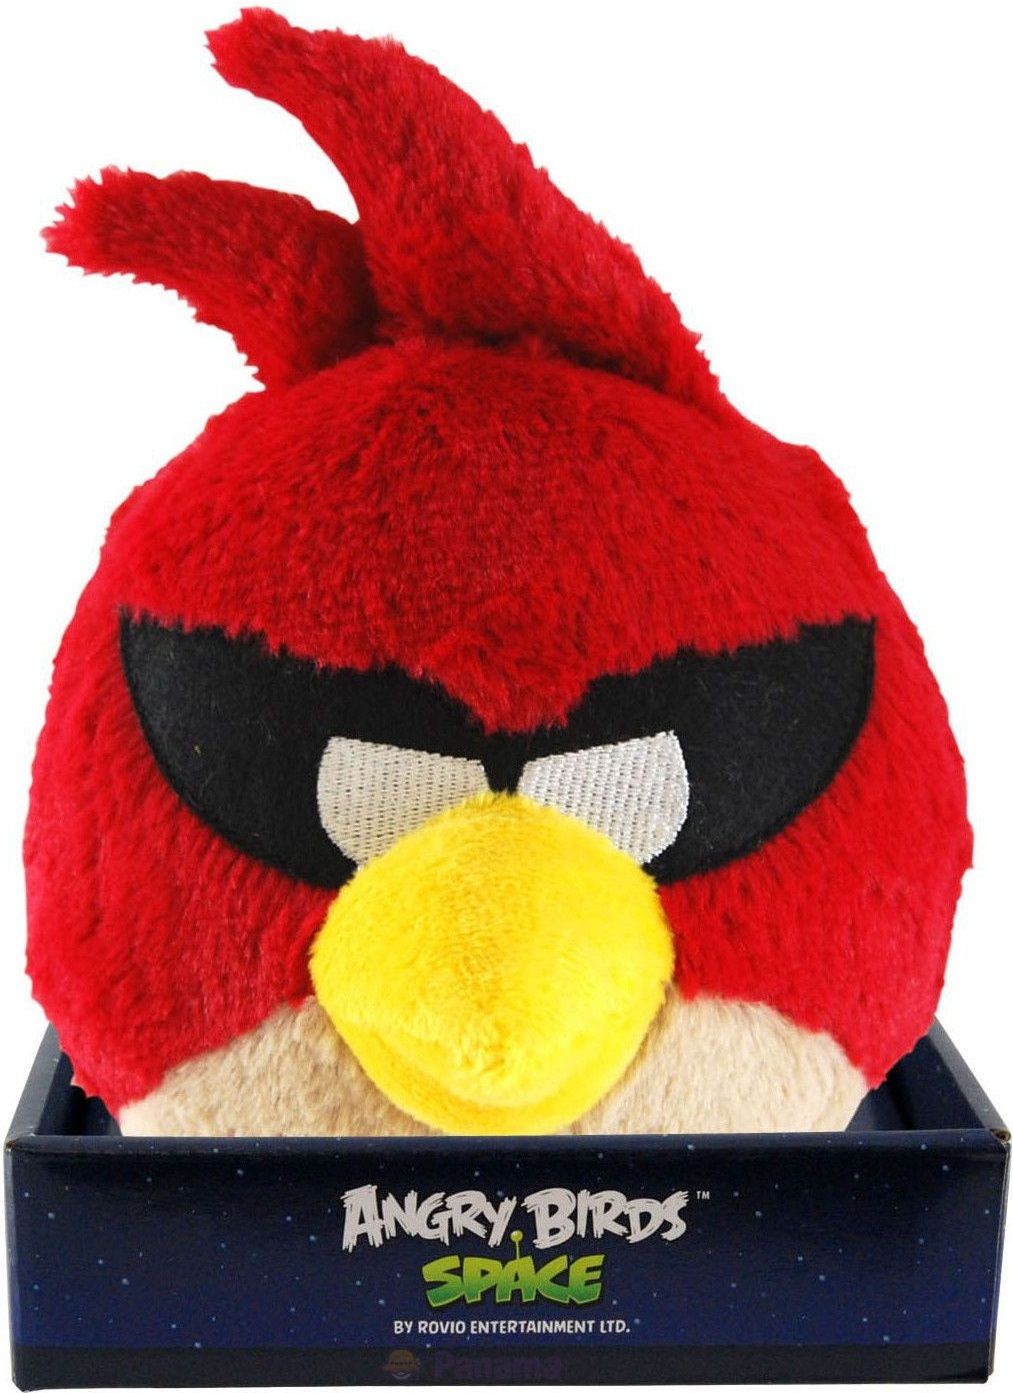 Мягкие игрушки энгри бердз. Игрушки Angry Birds Rovio. Angry Birds Space игрушки мягкие. Игрушка Энгри бердз мягкая красная.